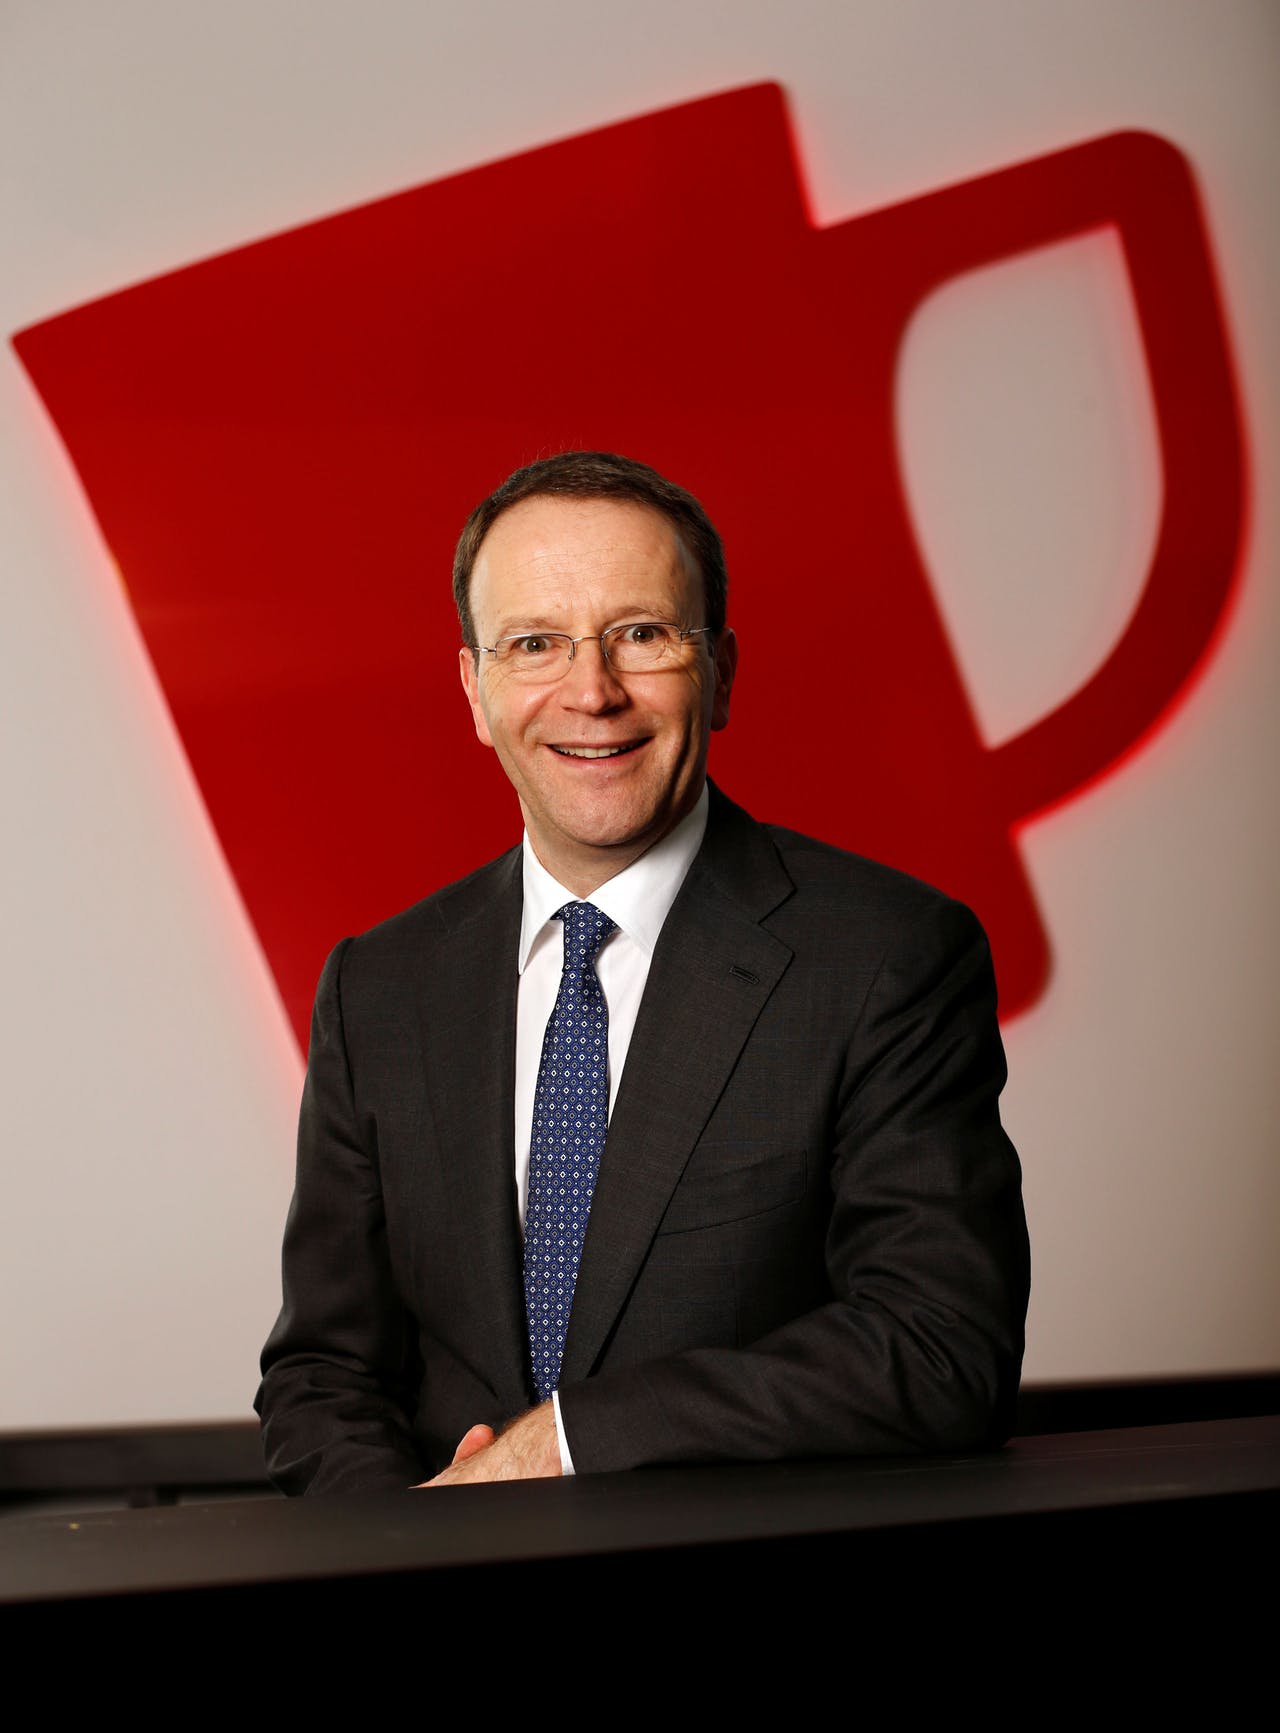 Giám đốc điều hành tập đoàn Nestlé toàn cầu, ông Mark Schneider.